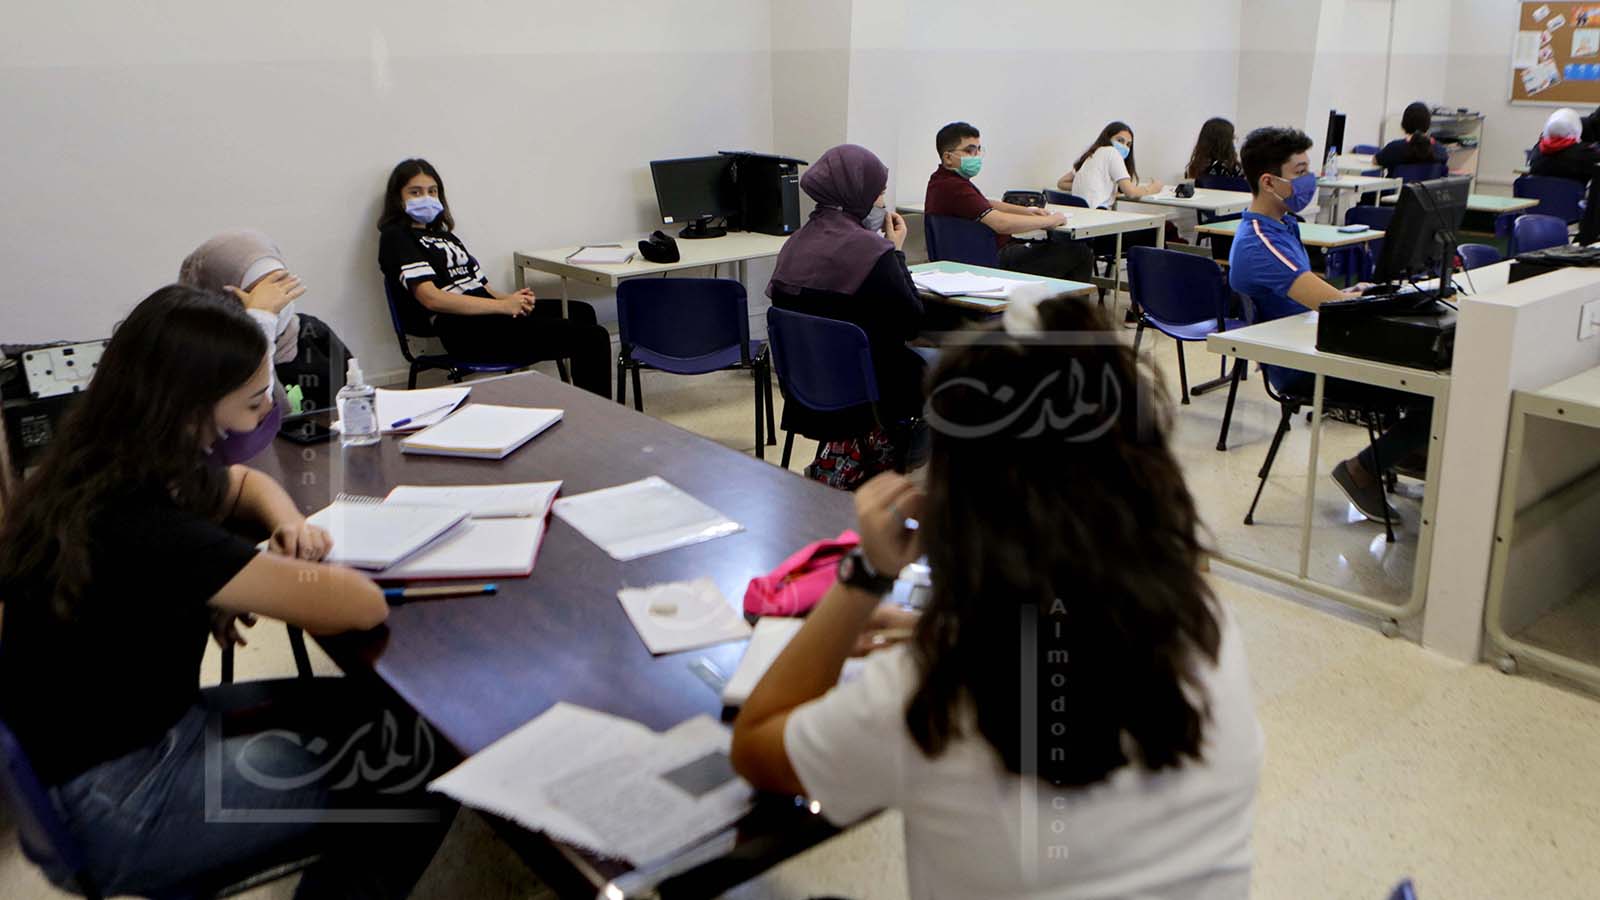 "صوملة" لبنان:صفوف الشهادة بعد الأعياد والامتحانات الرسمية للأغنياء